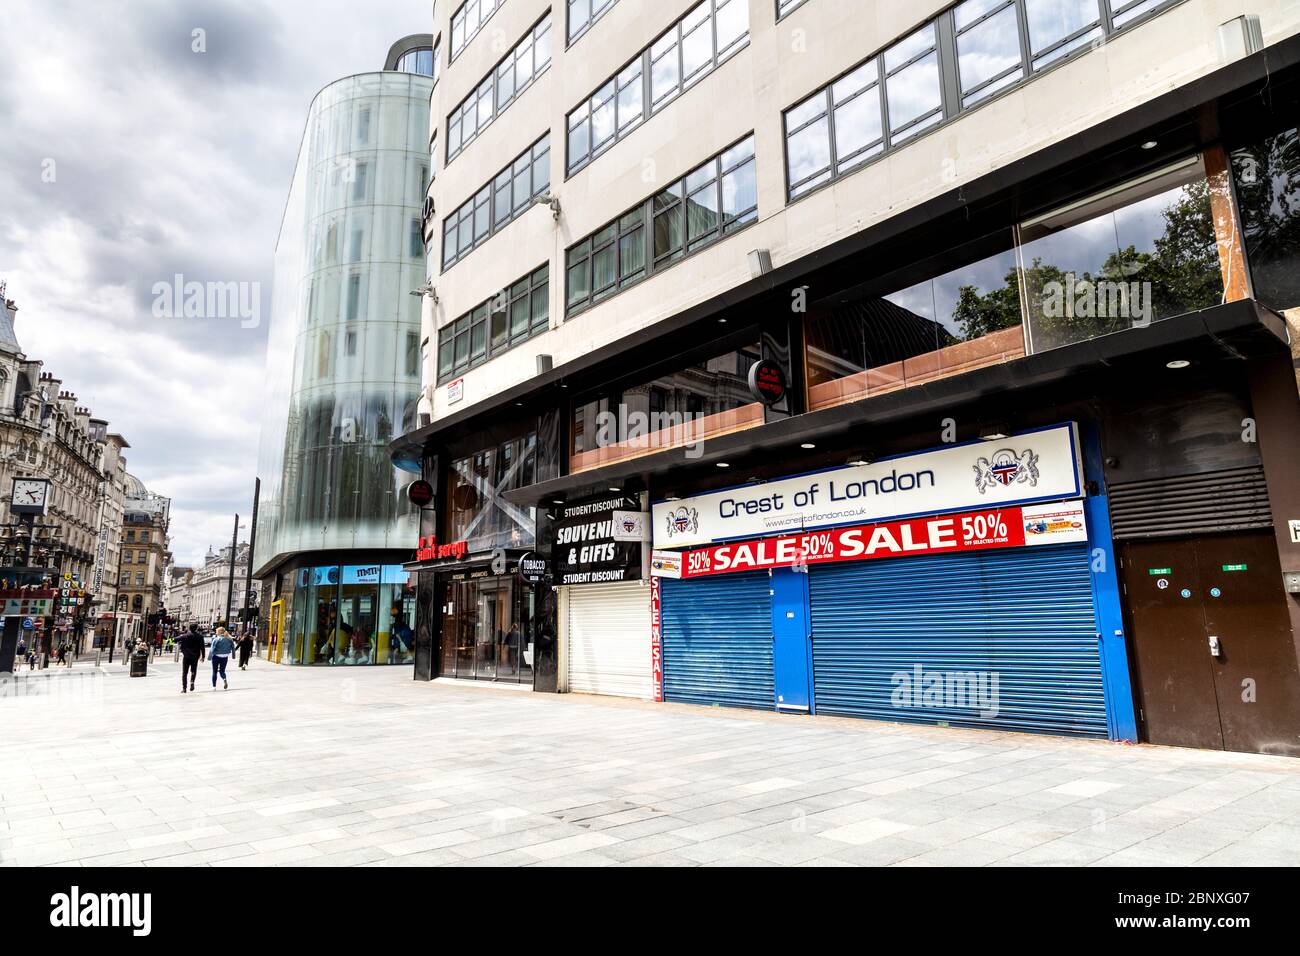 16 maggio 2020 Londra, Regno Unito - i negozi di souvenir di Leicester Square sono chiusi durante il blocco pandemico di Coronavirus Foto Stock